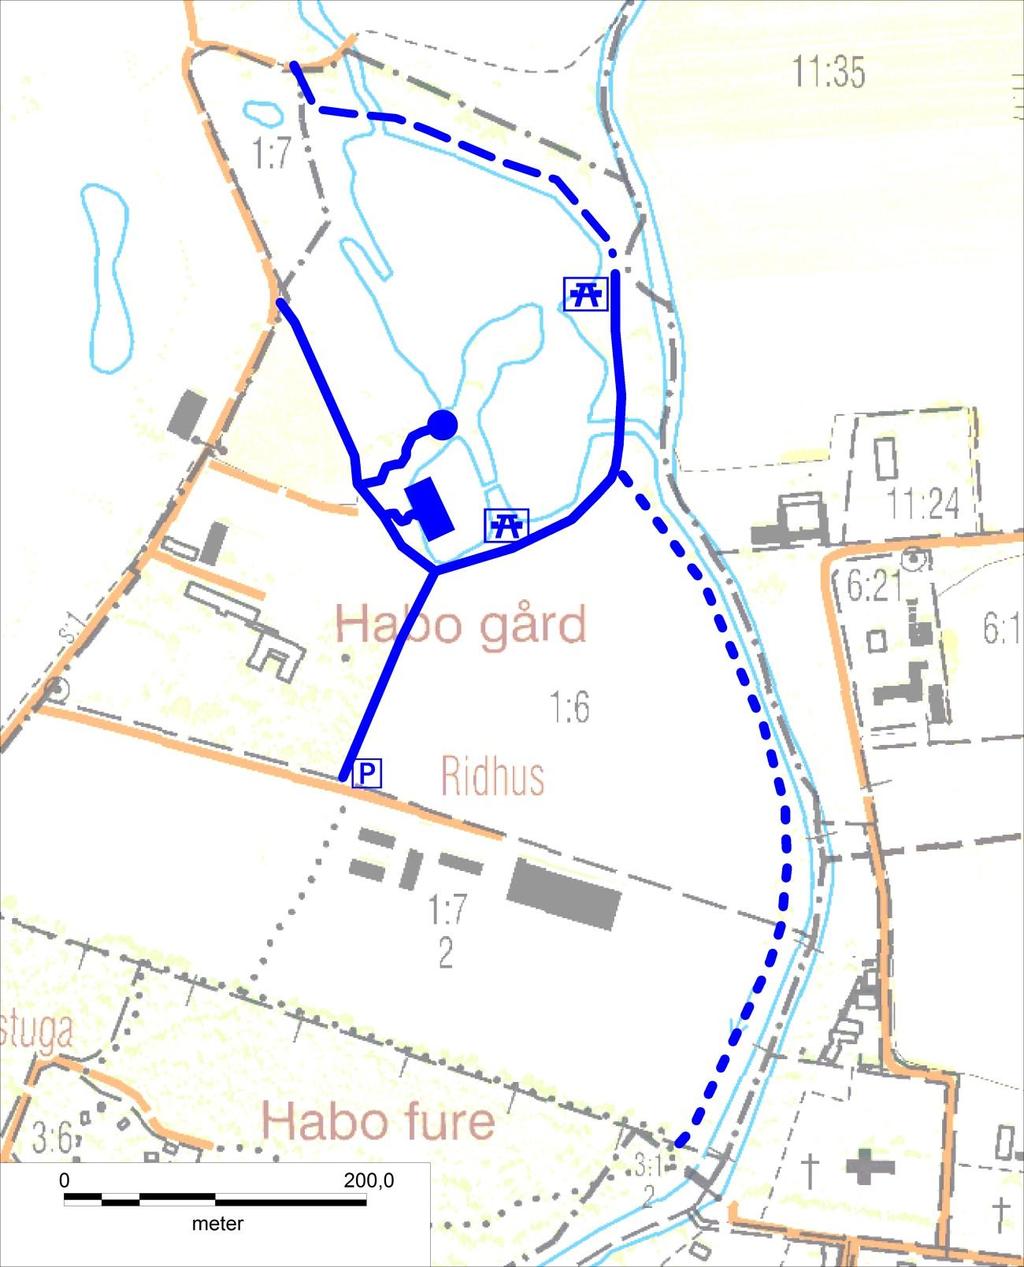 Habo dammar Vid Habo dammar har ett gångstråk runt dammarna anlagts under 2010 (se figur 5).